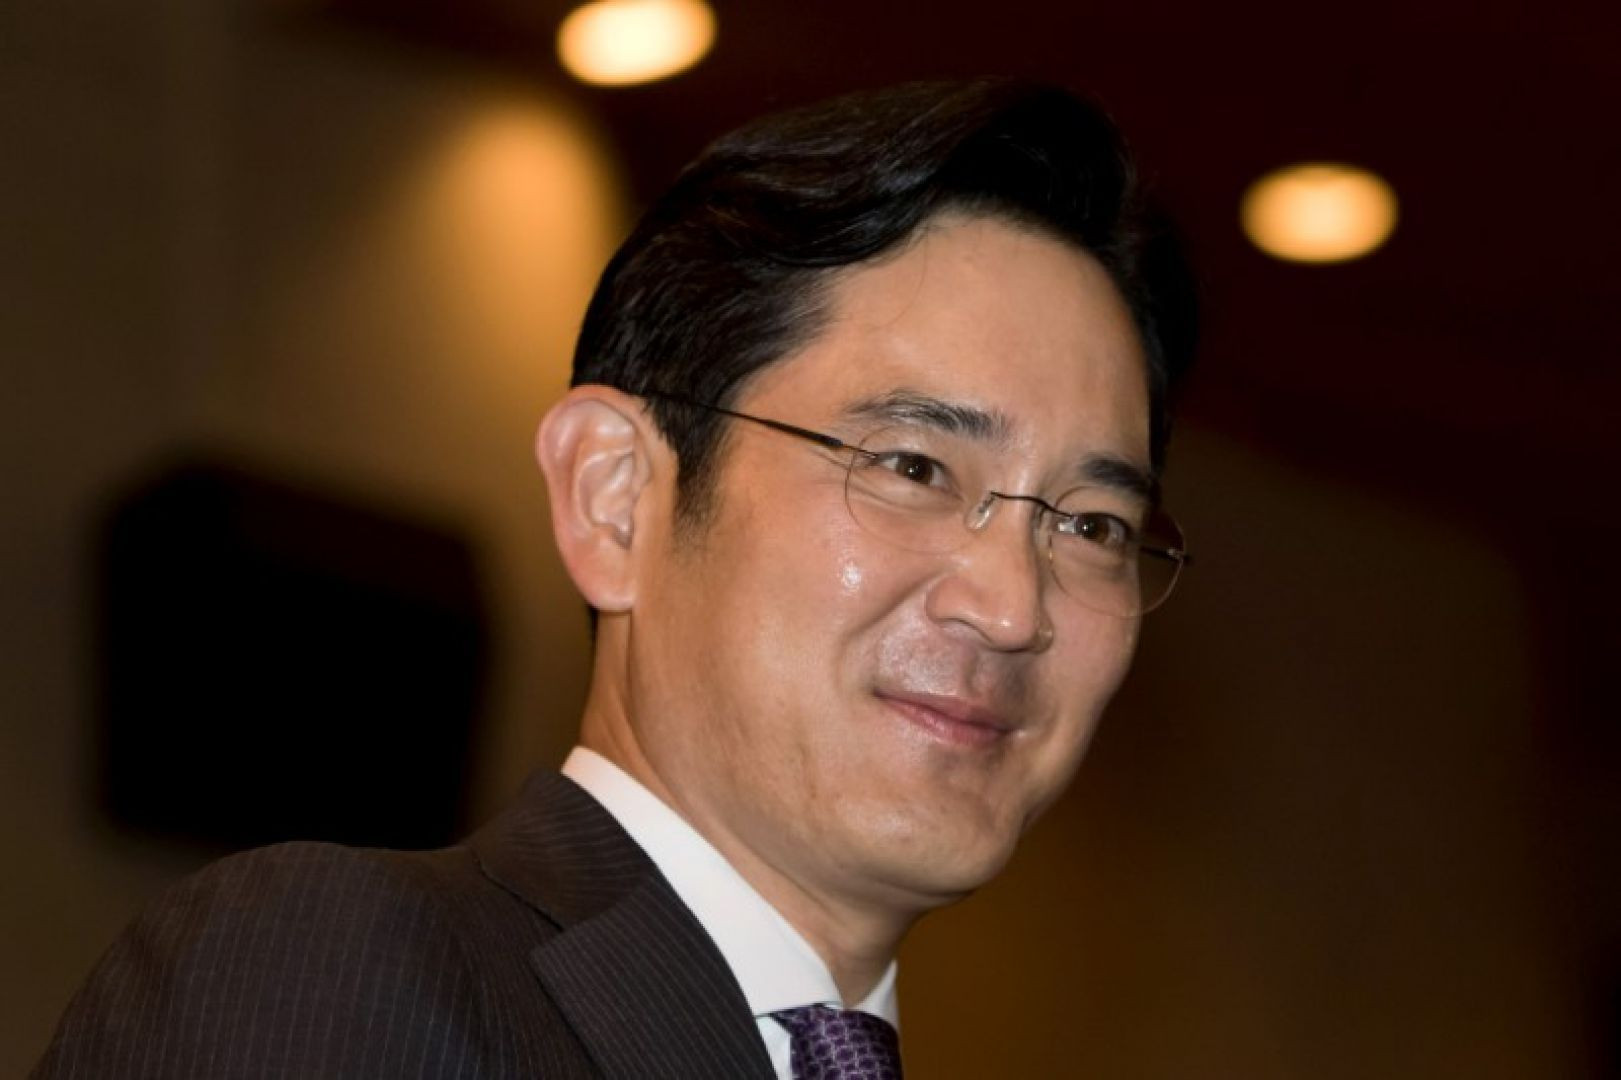 prípade potvrdenia obvinení z korupcie sa bude musieť súčasný šéf Samsungu, I Če-jong, vzdať svojej funkcie.